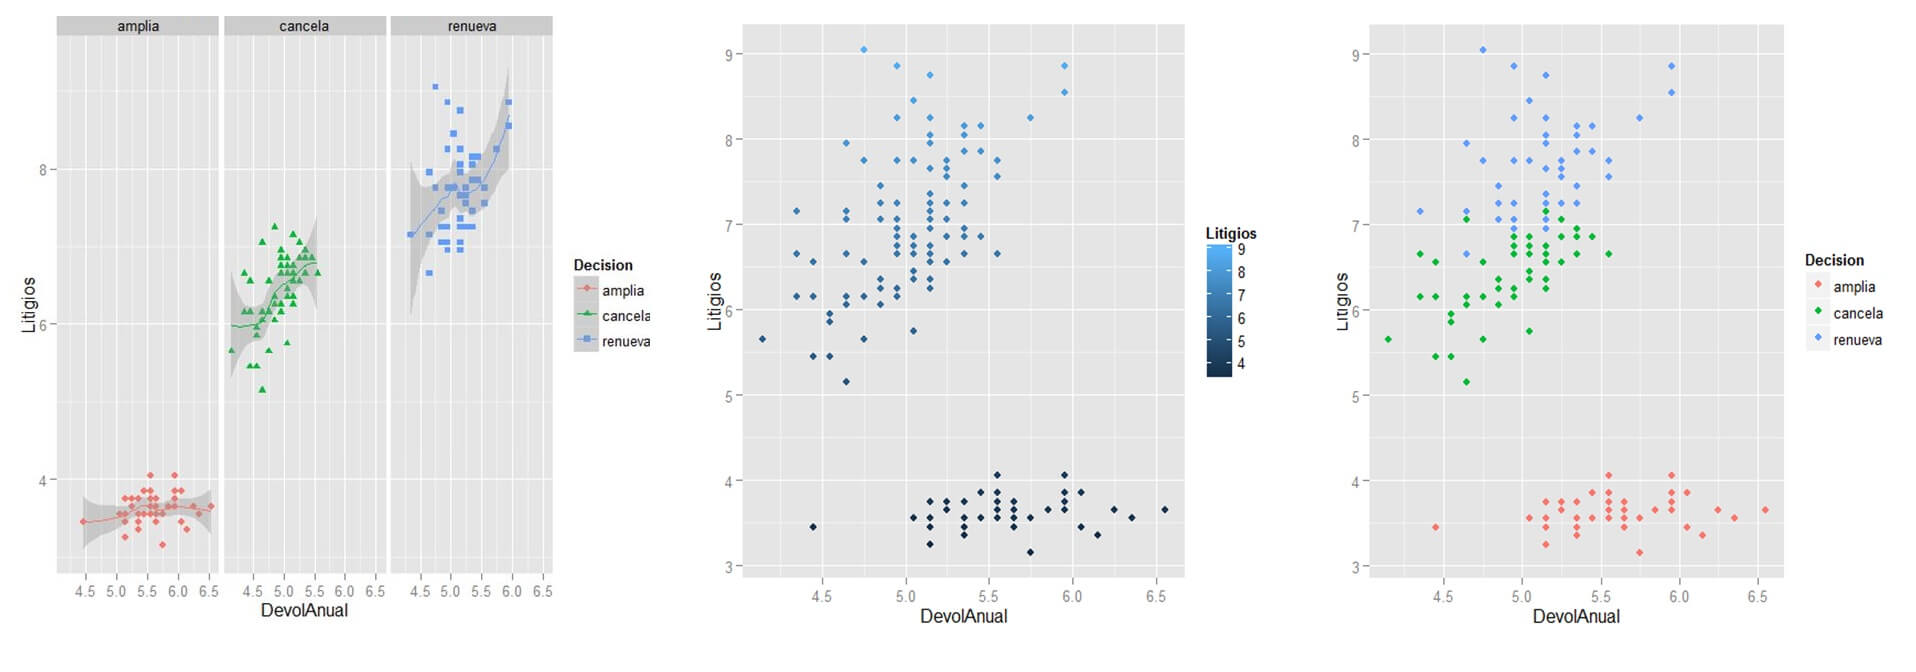 Visualización Analítica R en Big Data